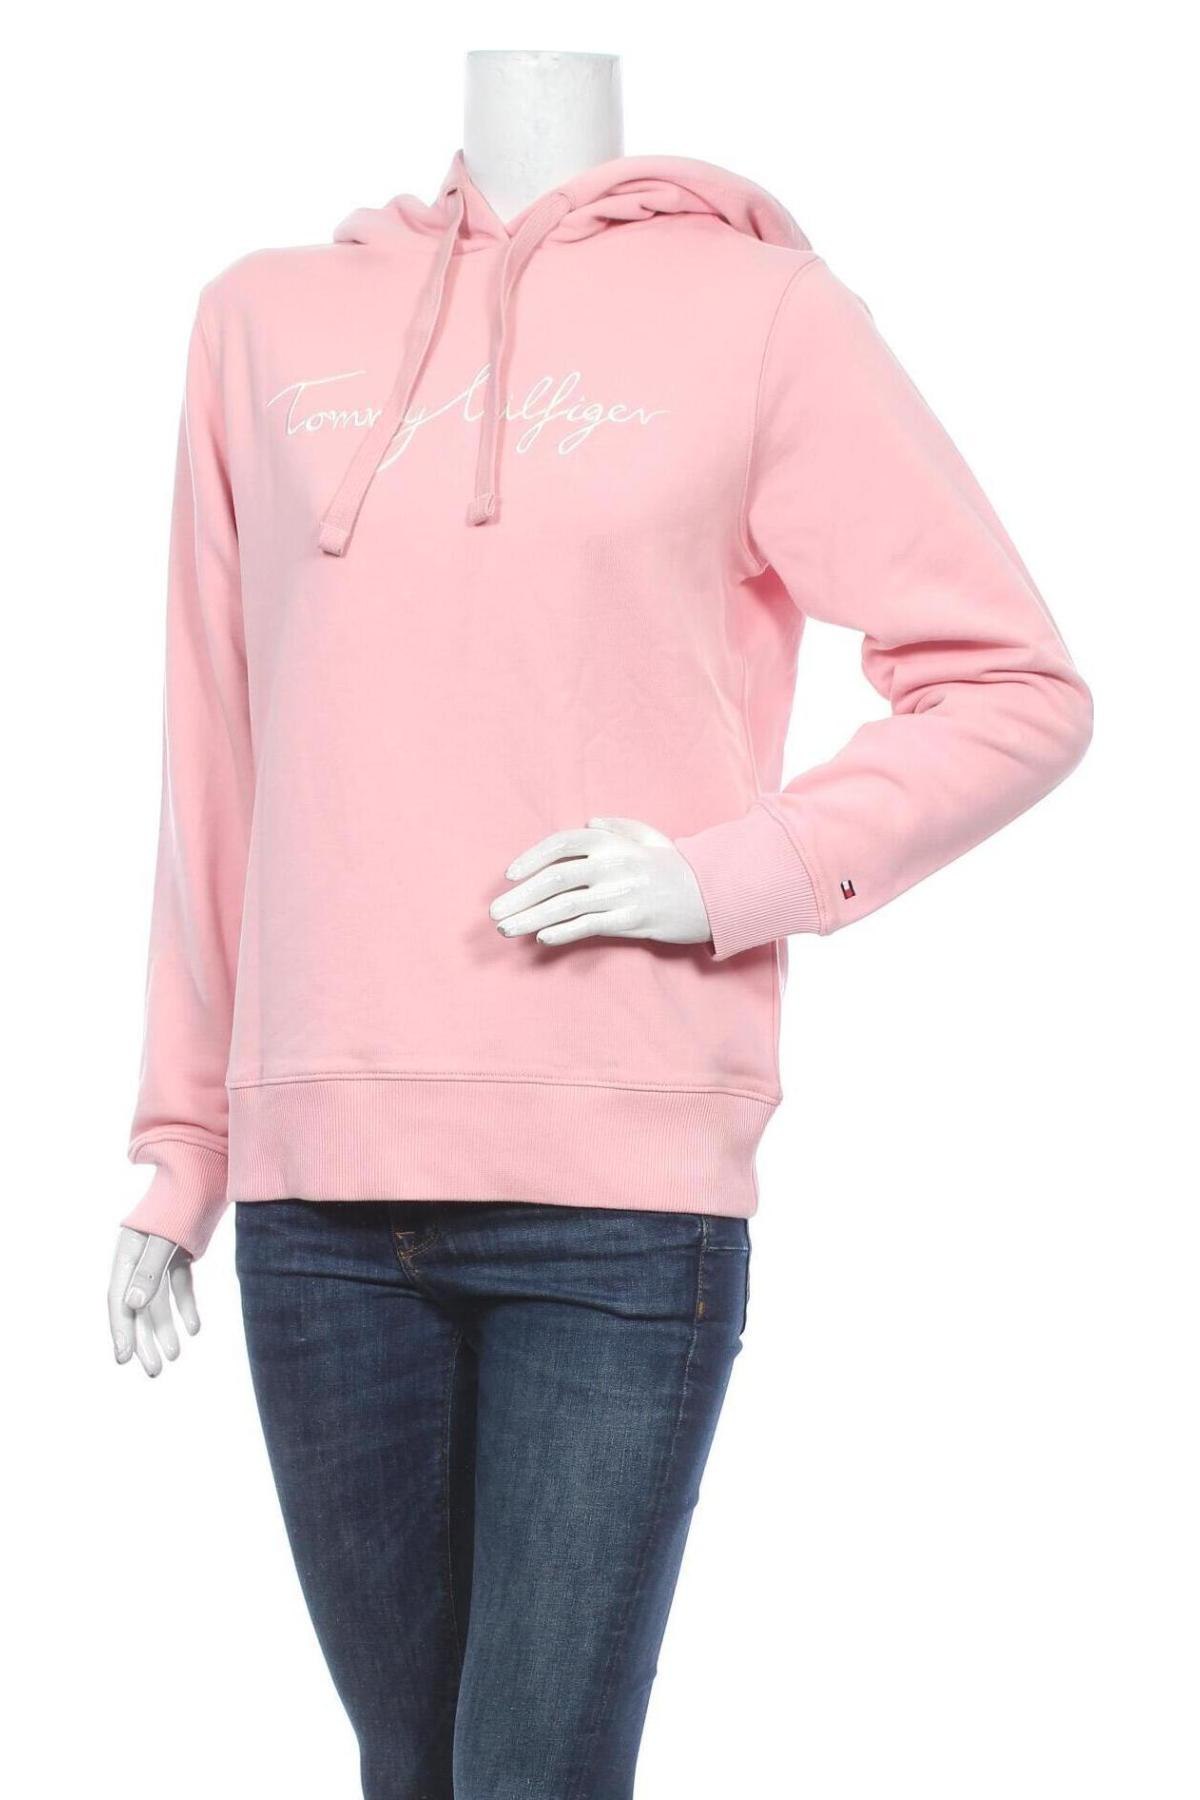 Damen Sweatshirt Tommy Hilfiger, Größe S, Farbe Rosa, Baumwolle, Preis 100,33 €